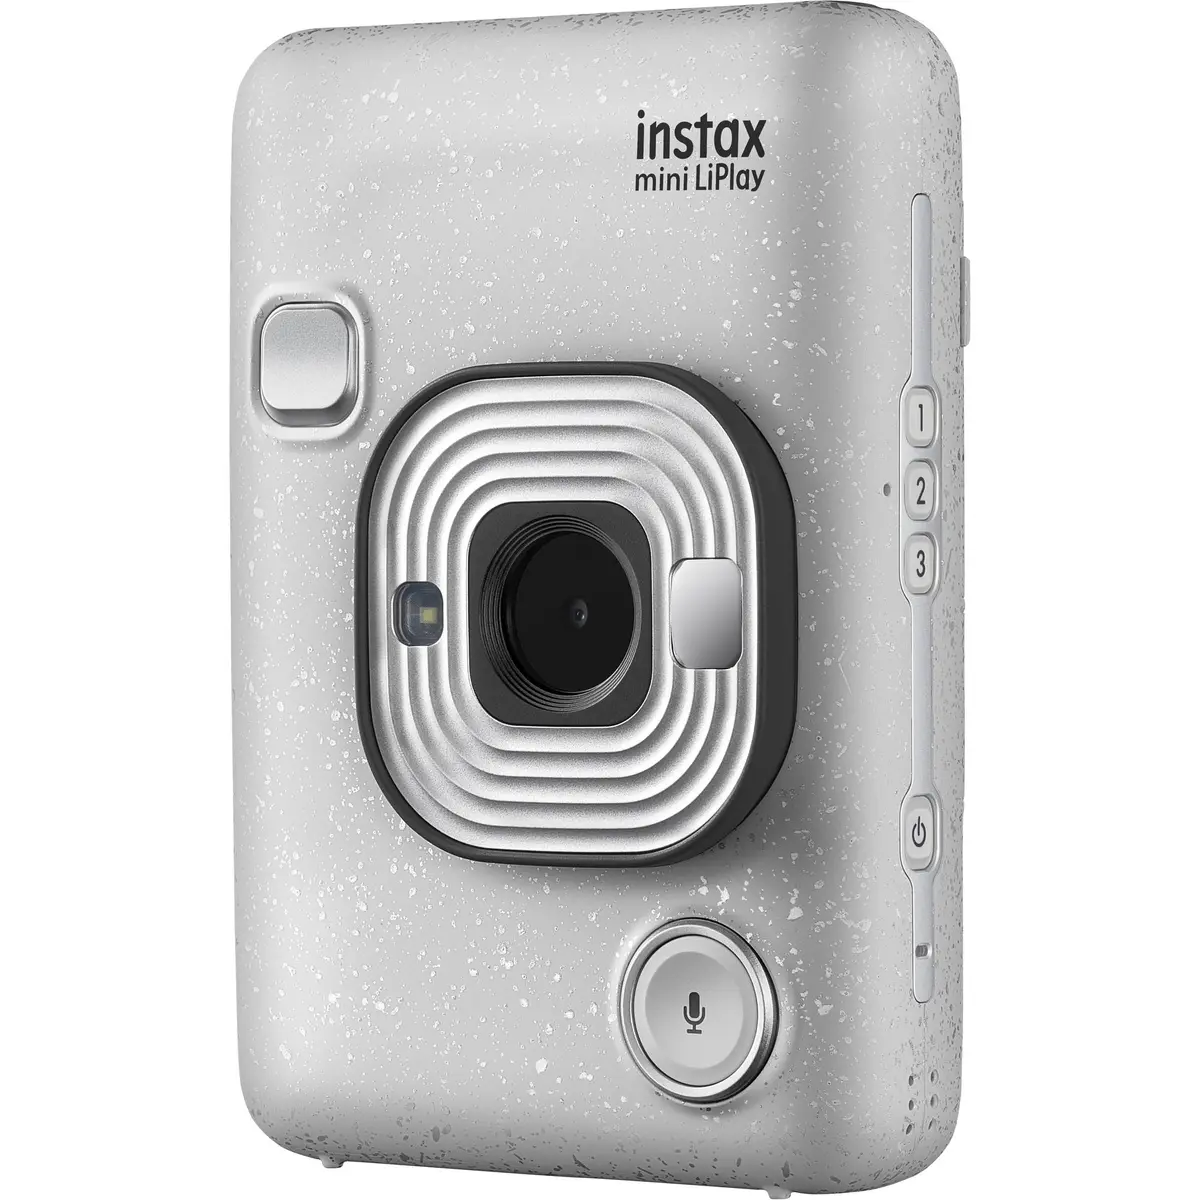 2. Fujifilm instax mini LiPlay (White)